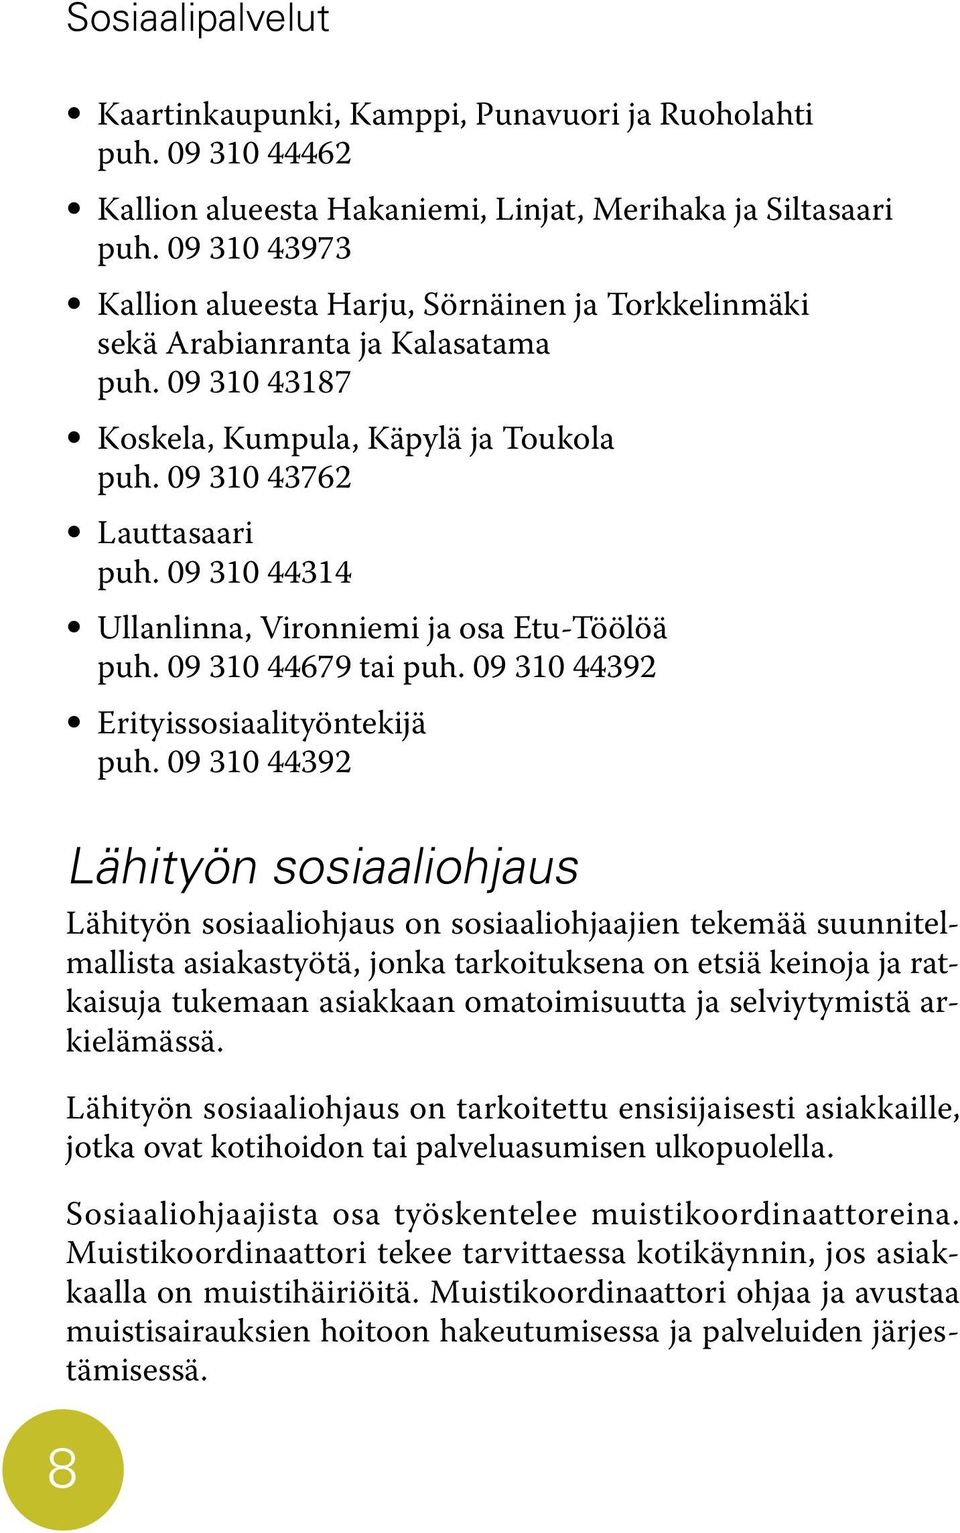 09 310 44314 Ullanlinna, Vironniemi ja osa Etu-Töölöä puh. 09 310 44679 tai puh. 09 310 44392 Erityissosiaalityöntekijä puh.